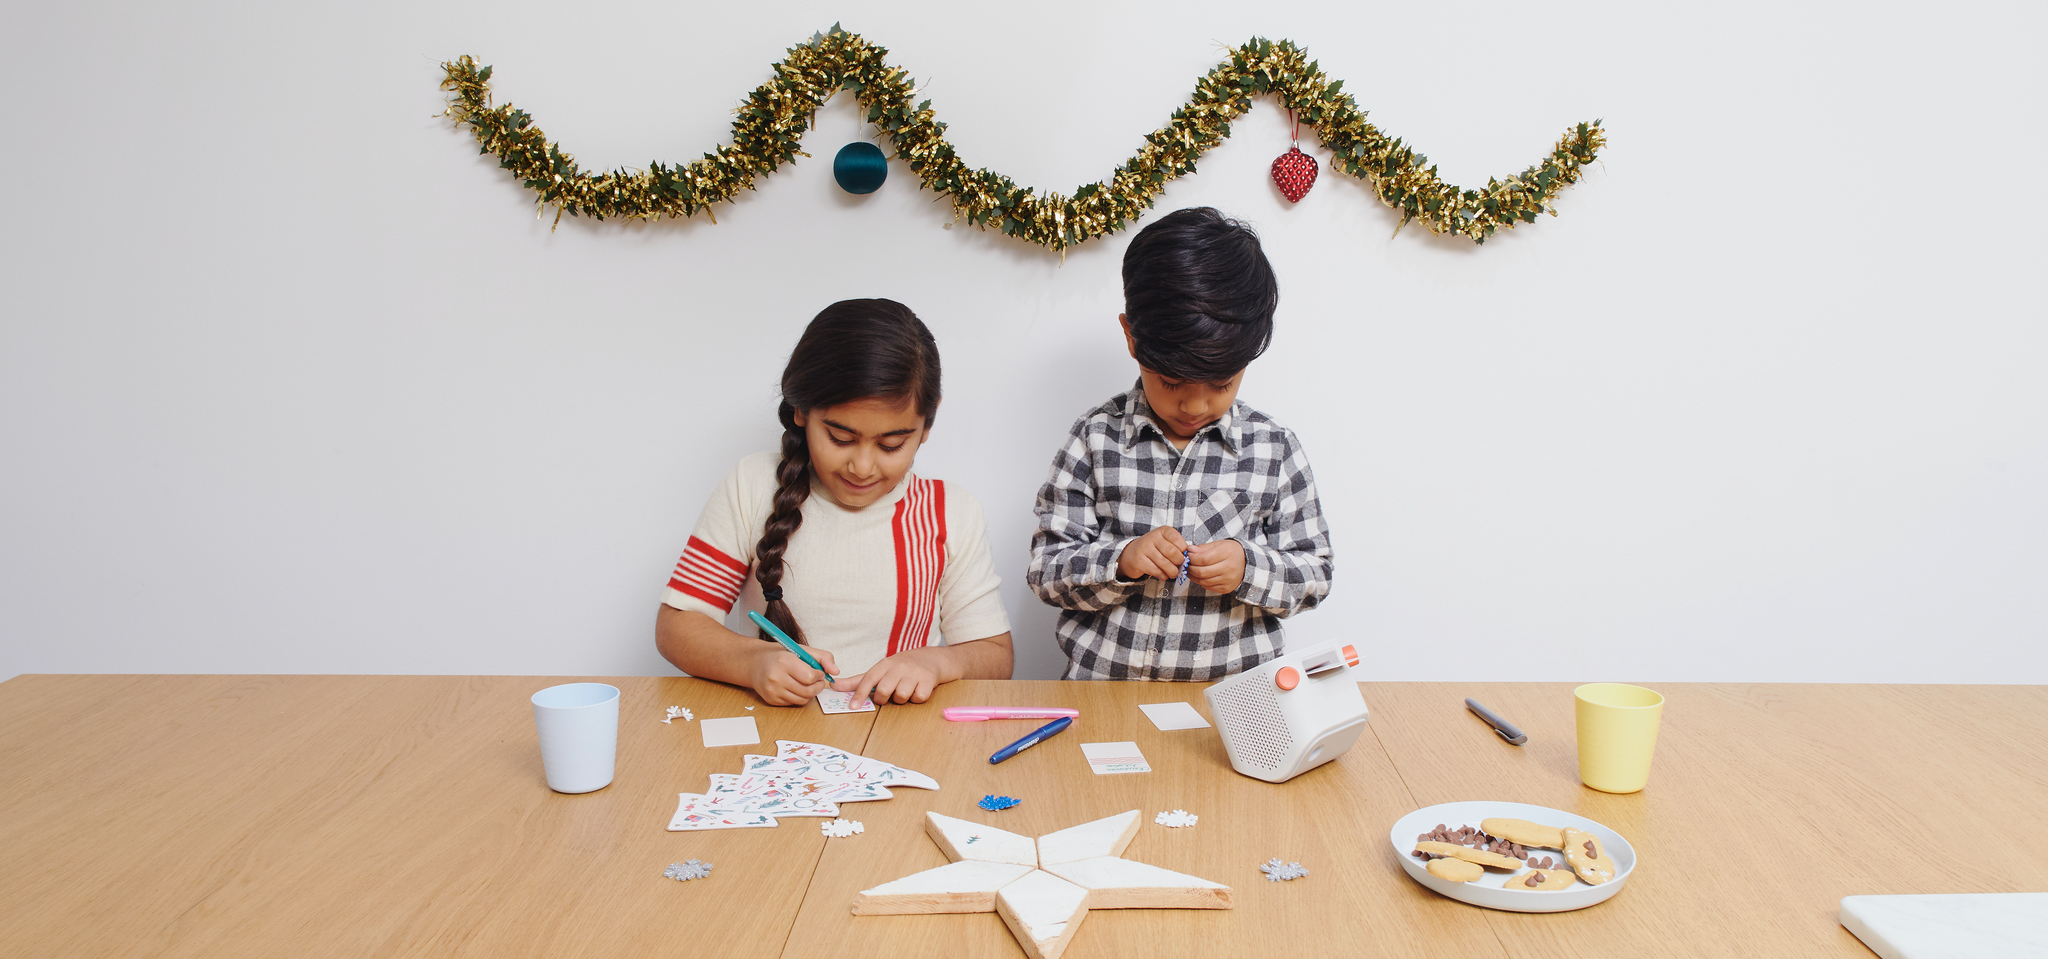 Transformez vos enfants en petits elfes créatifs ce Noël